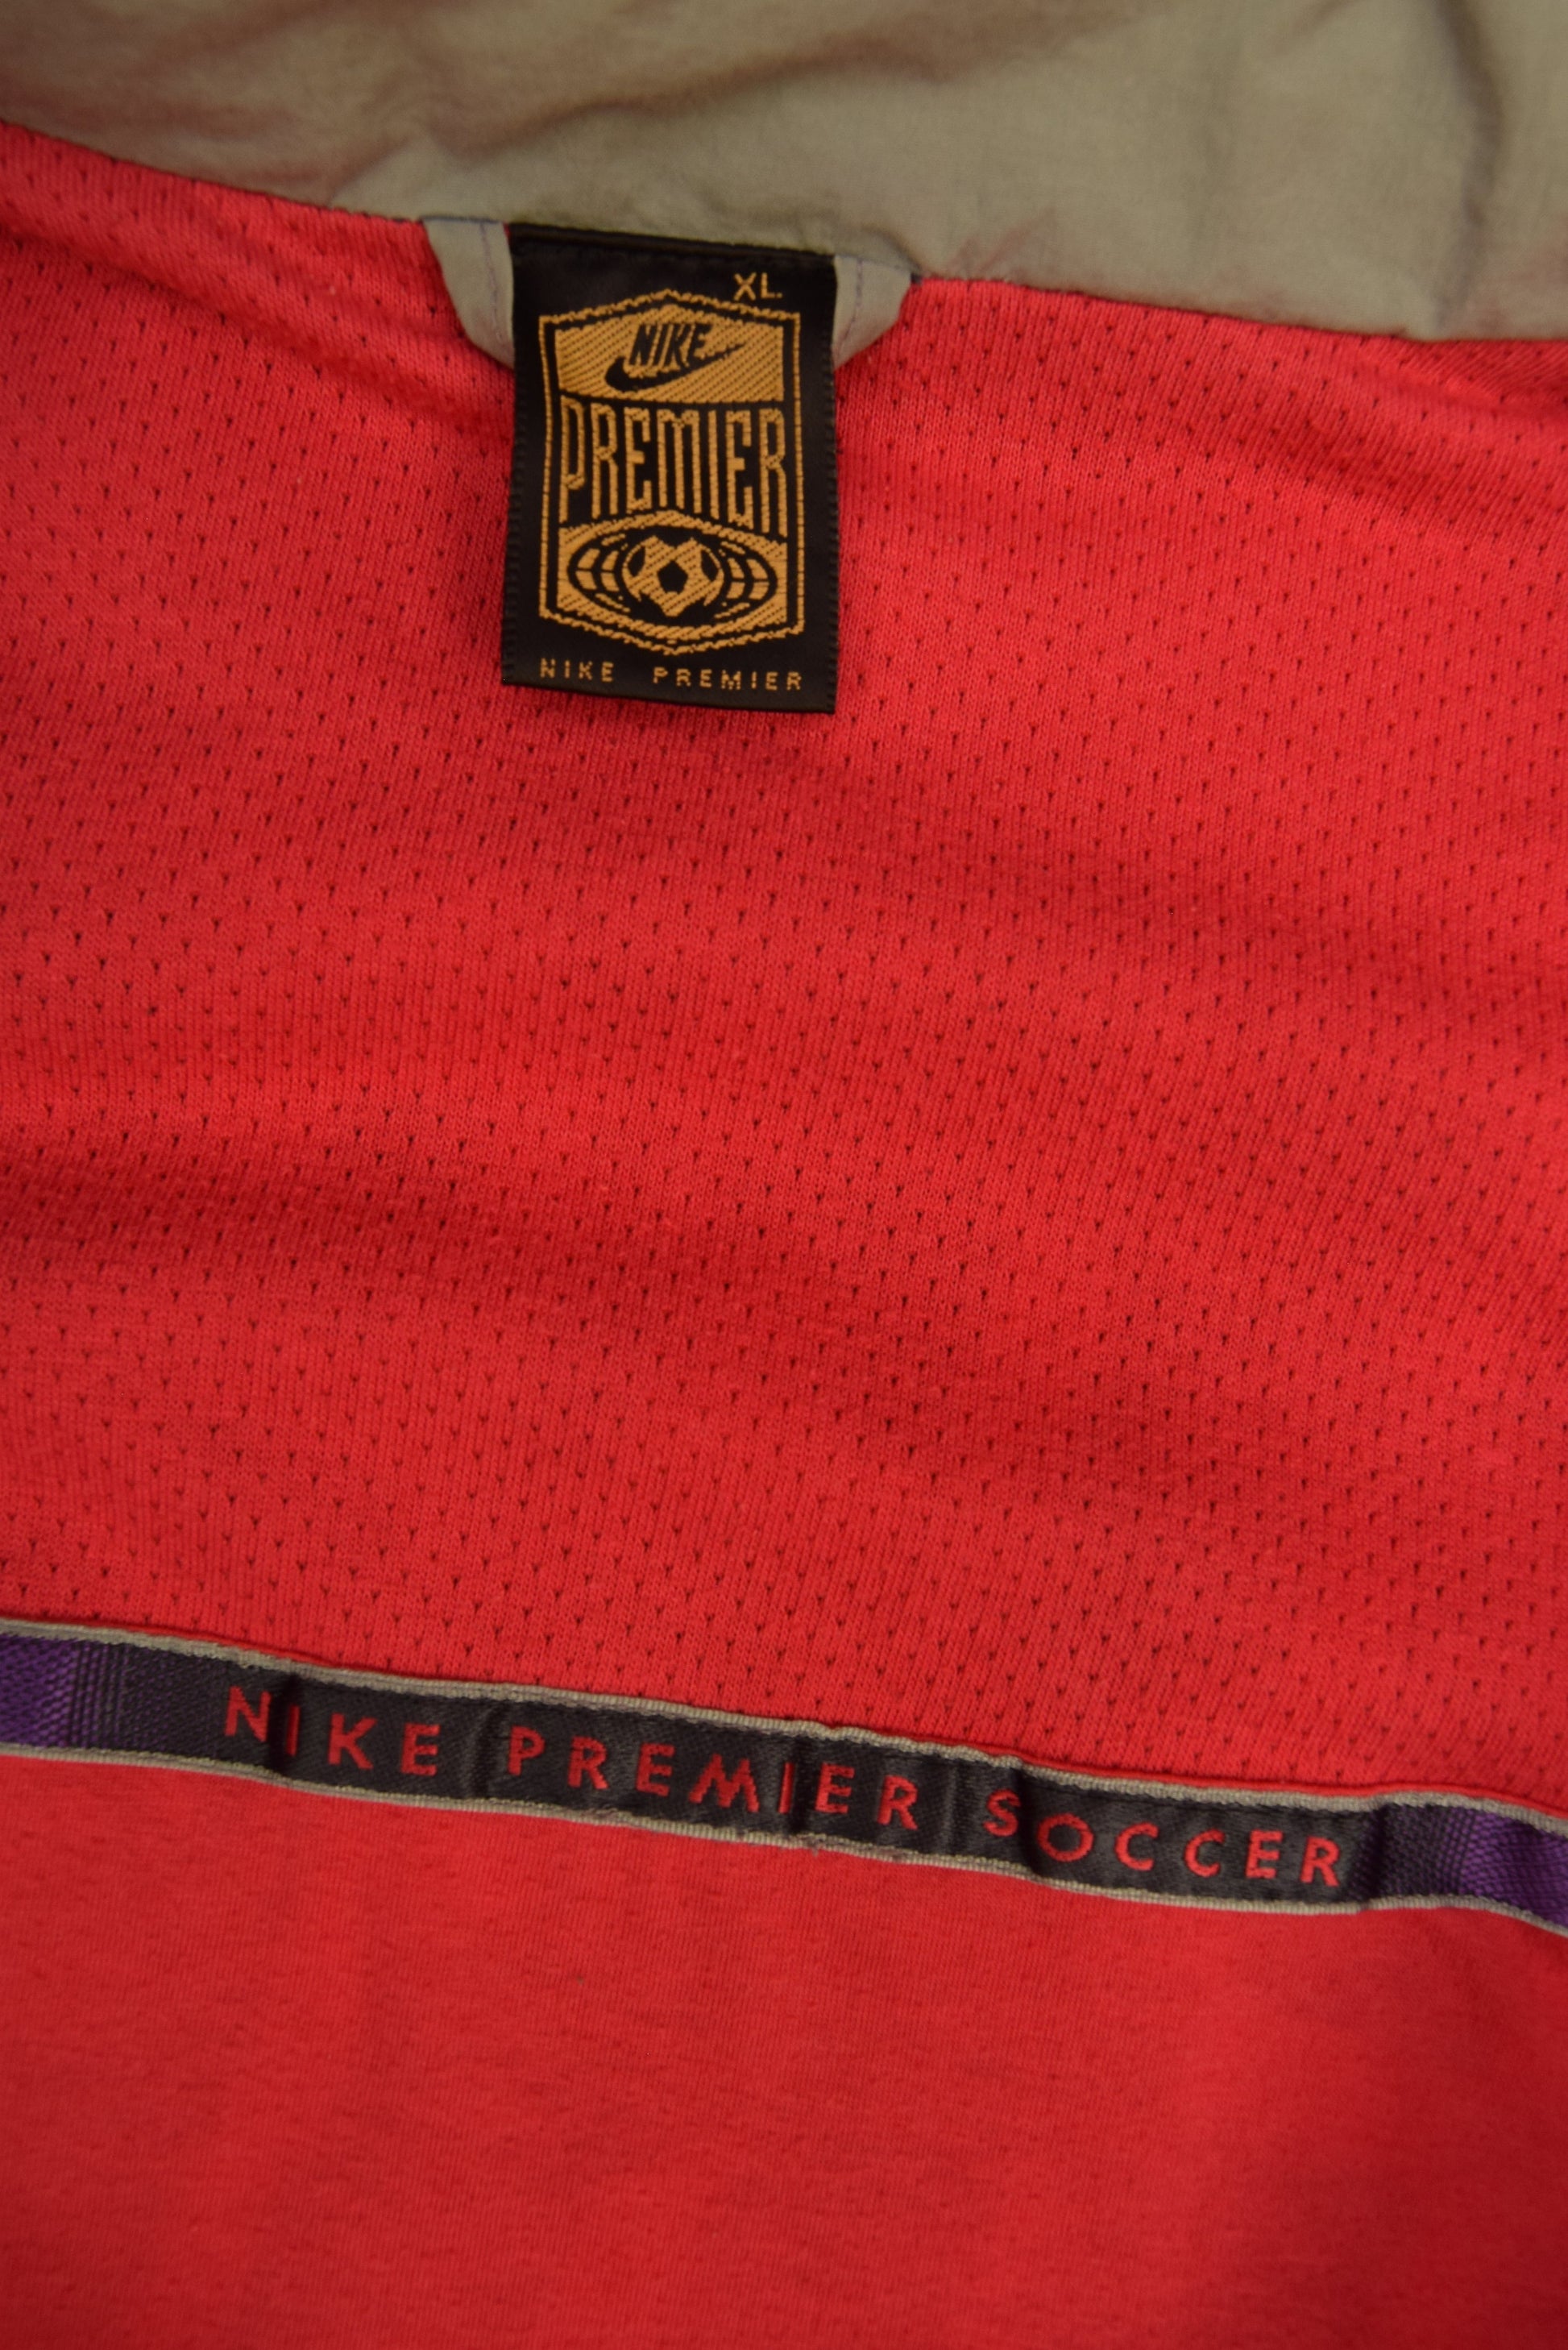 Vintage Nike Premier Soccer Jacket Size XL